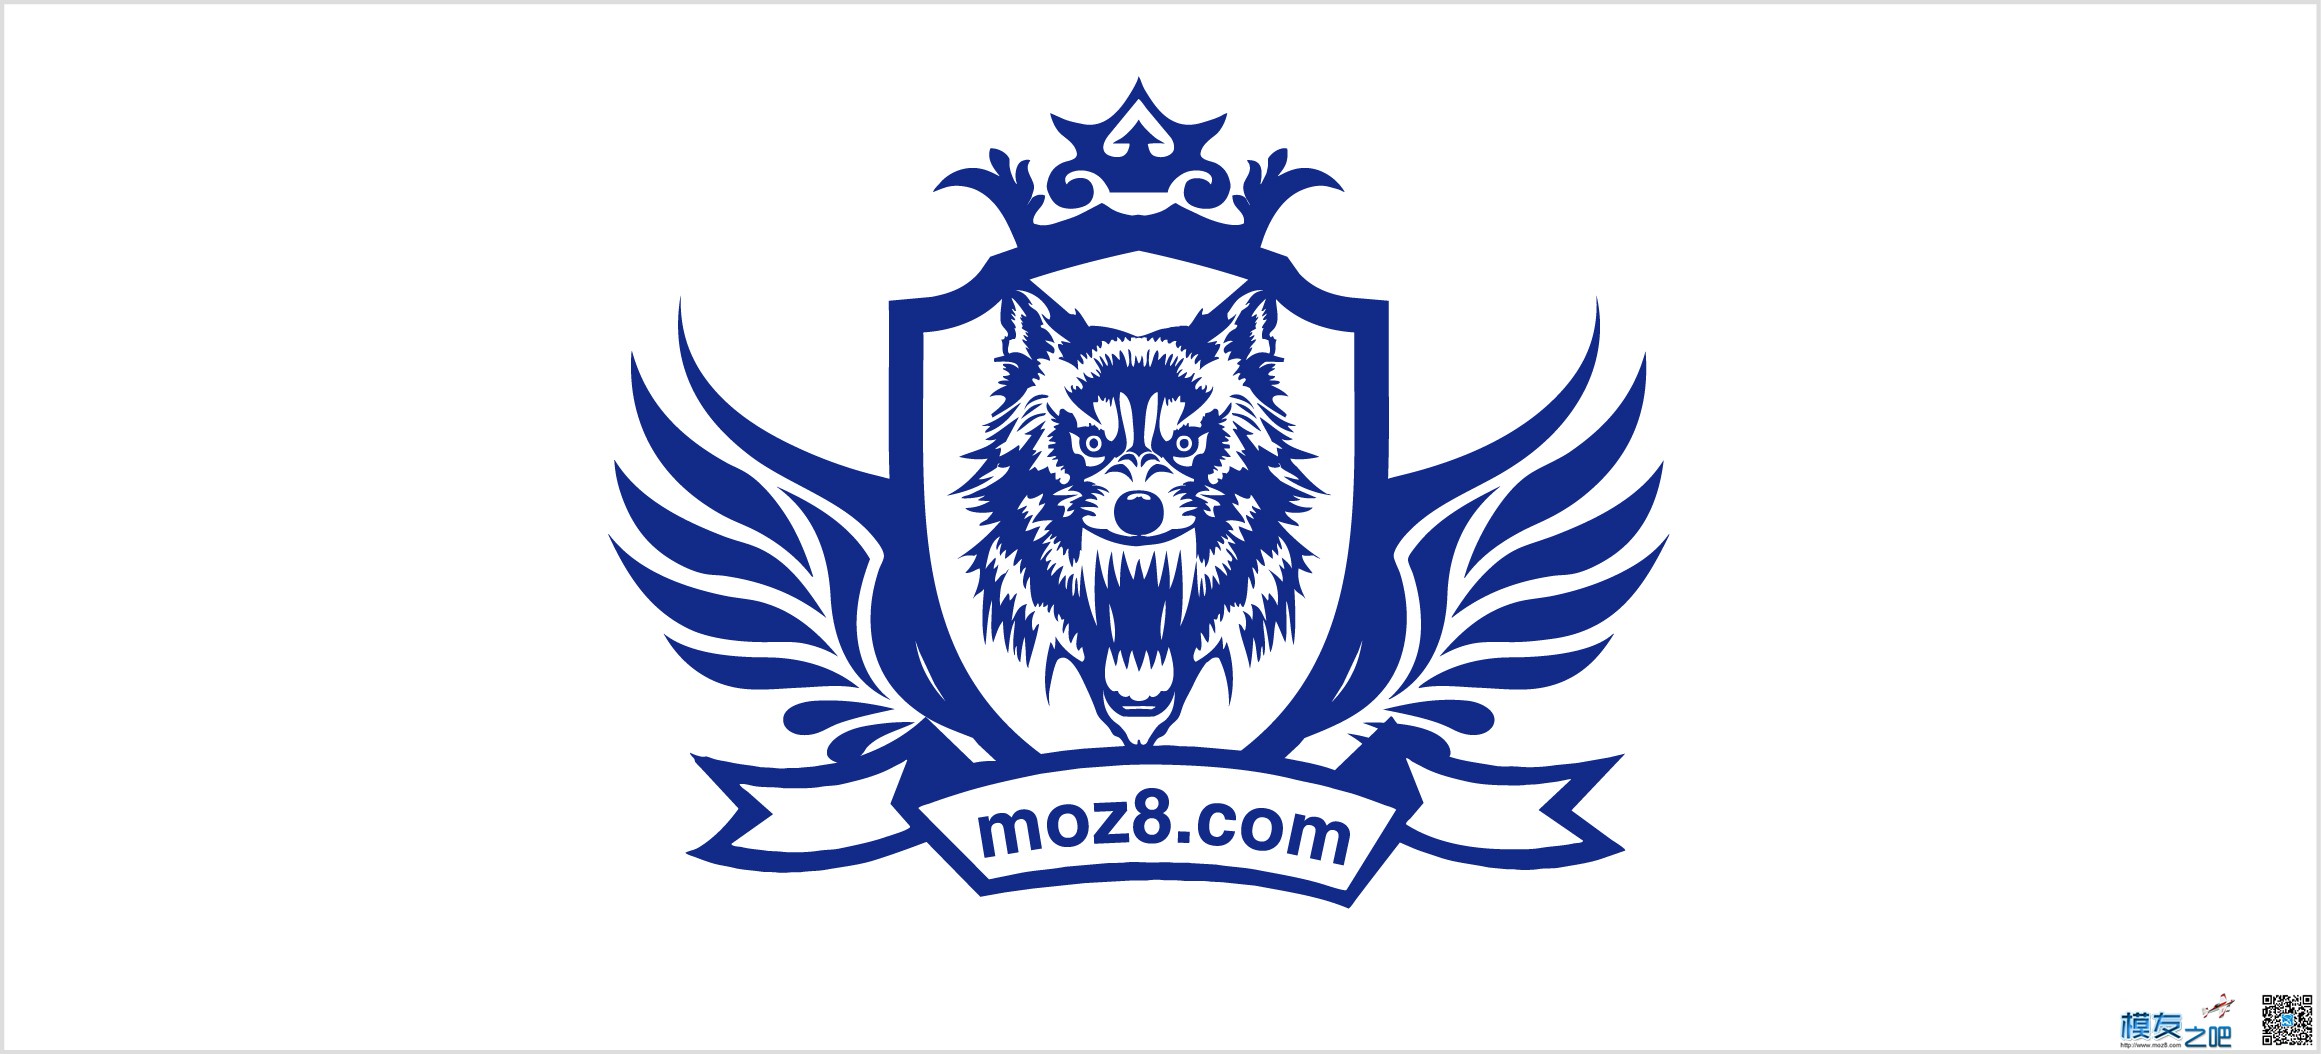 飞天狼的新的logo 茅台的logo,飞天logo 作者:飞天狼 3447 